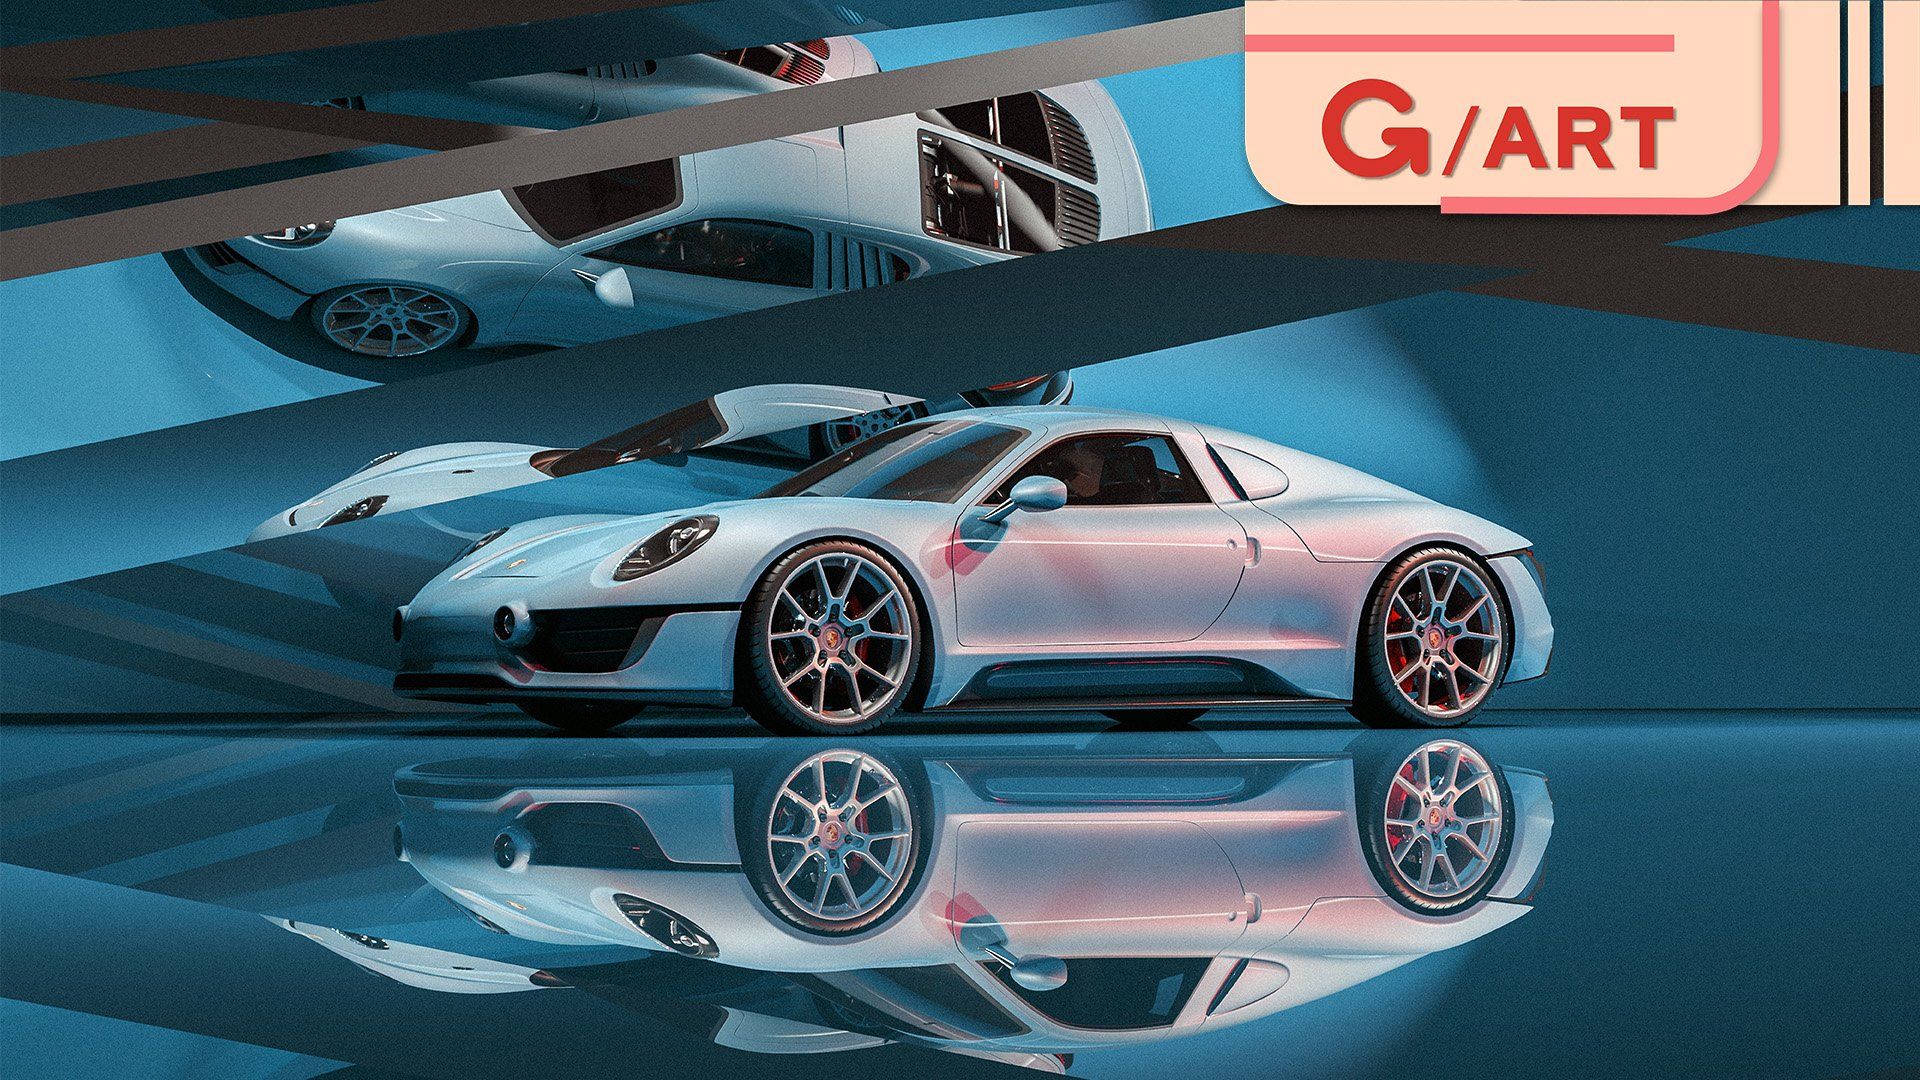 Vì ai cũng cần desktop ấn tượng, mời anh em tải bộ hình nền Porsche